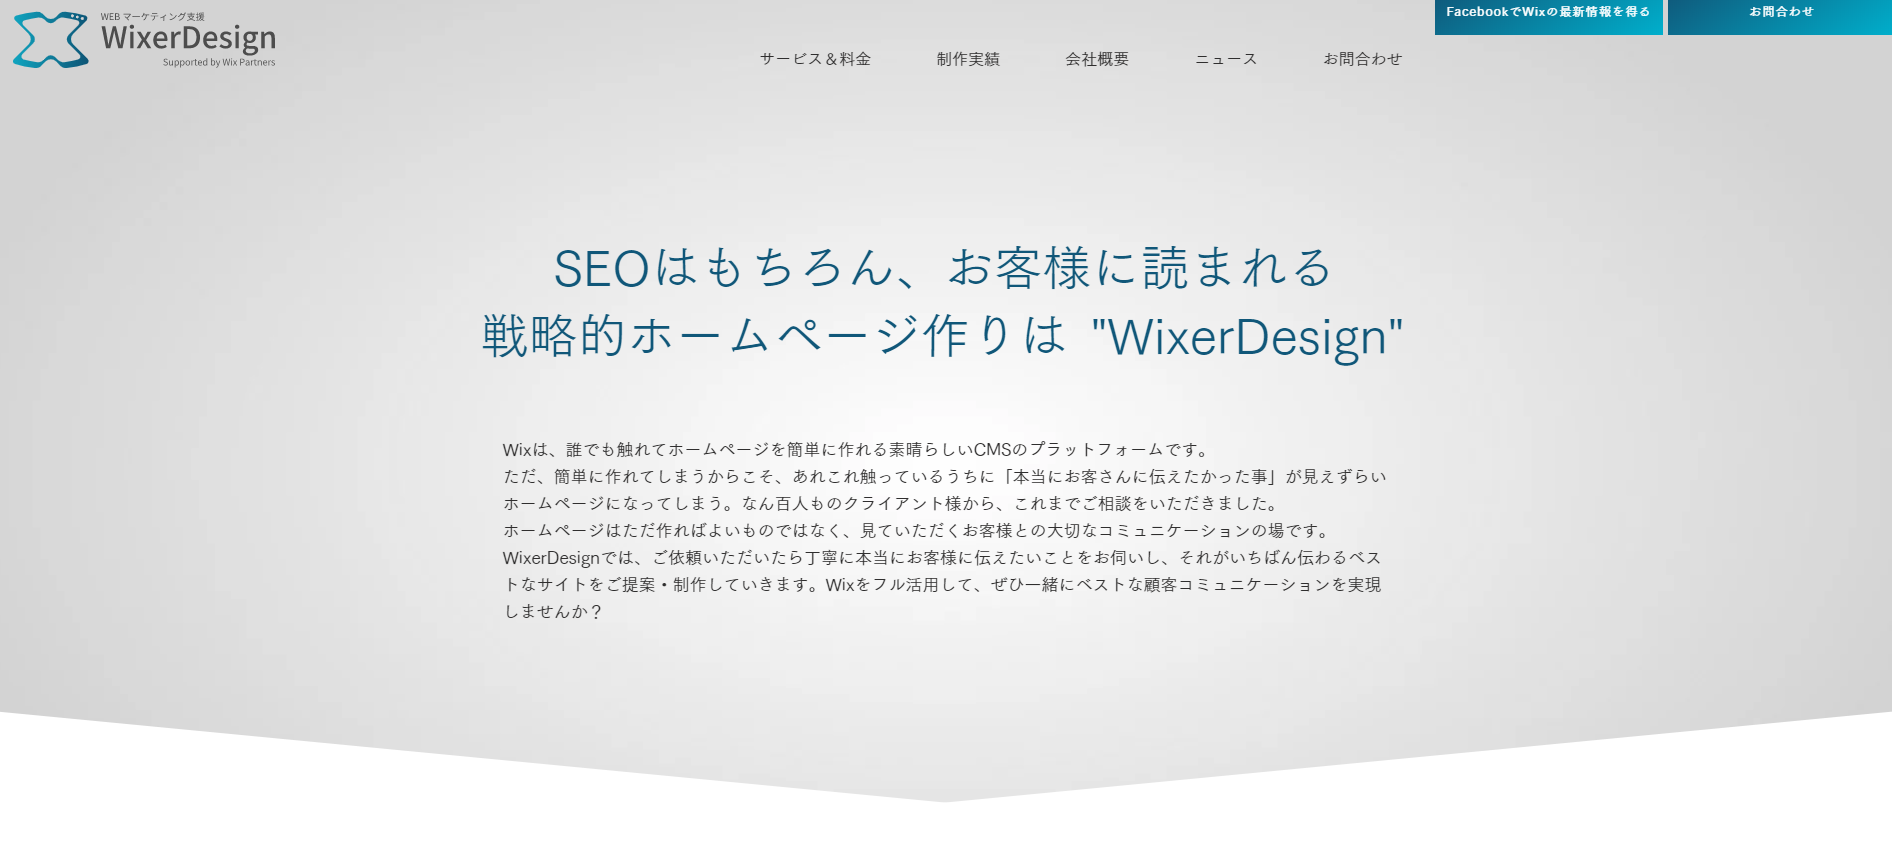 WixerDesign合同会社のWixerDesign合同会社サービス